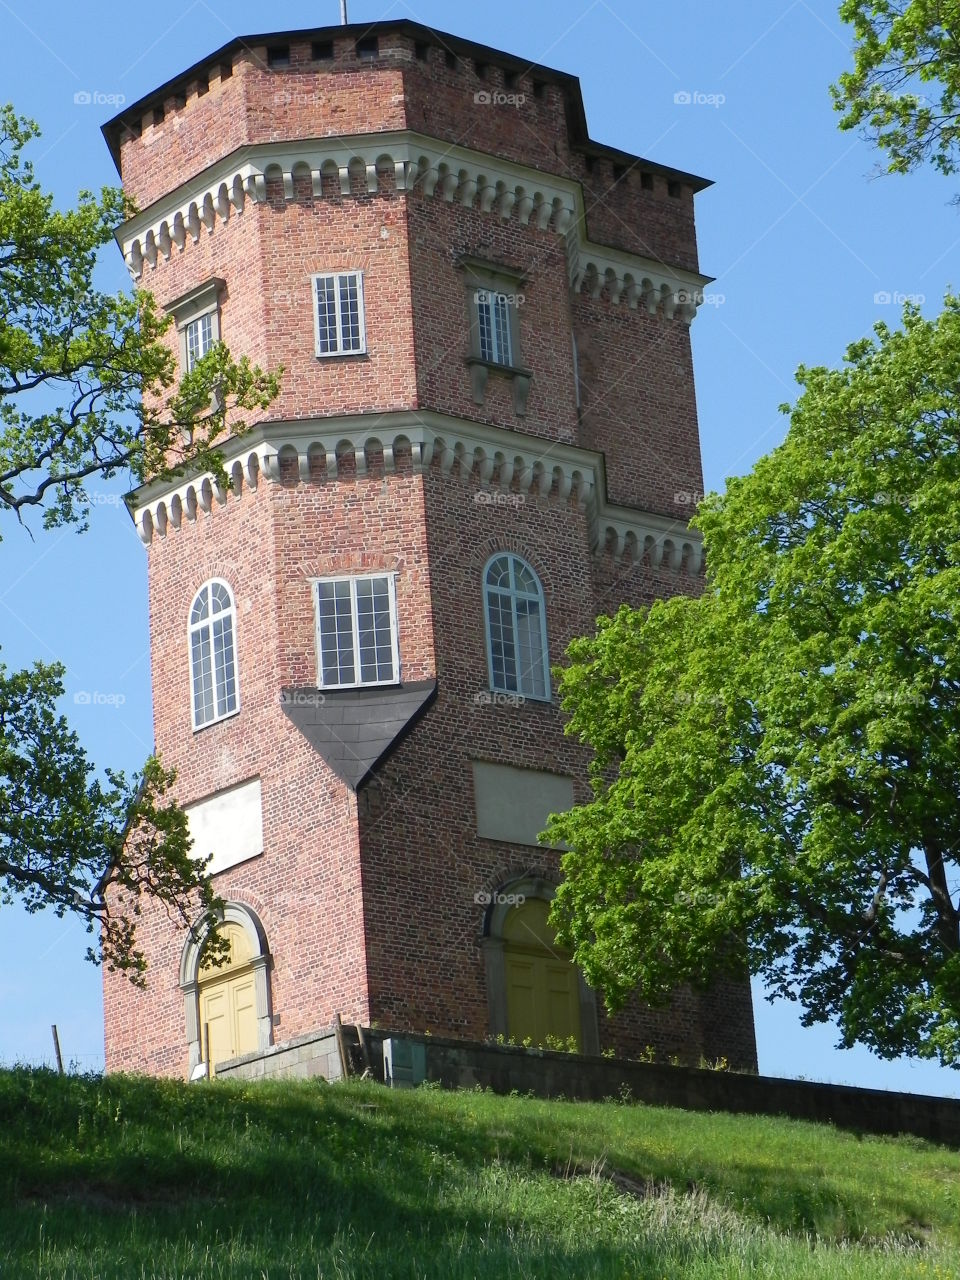 castle-tower